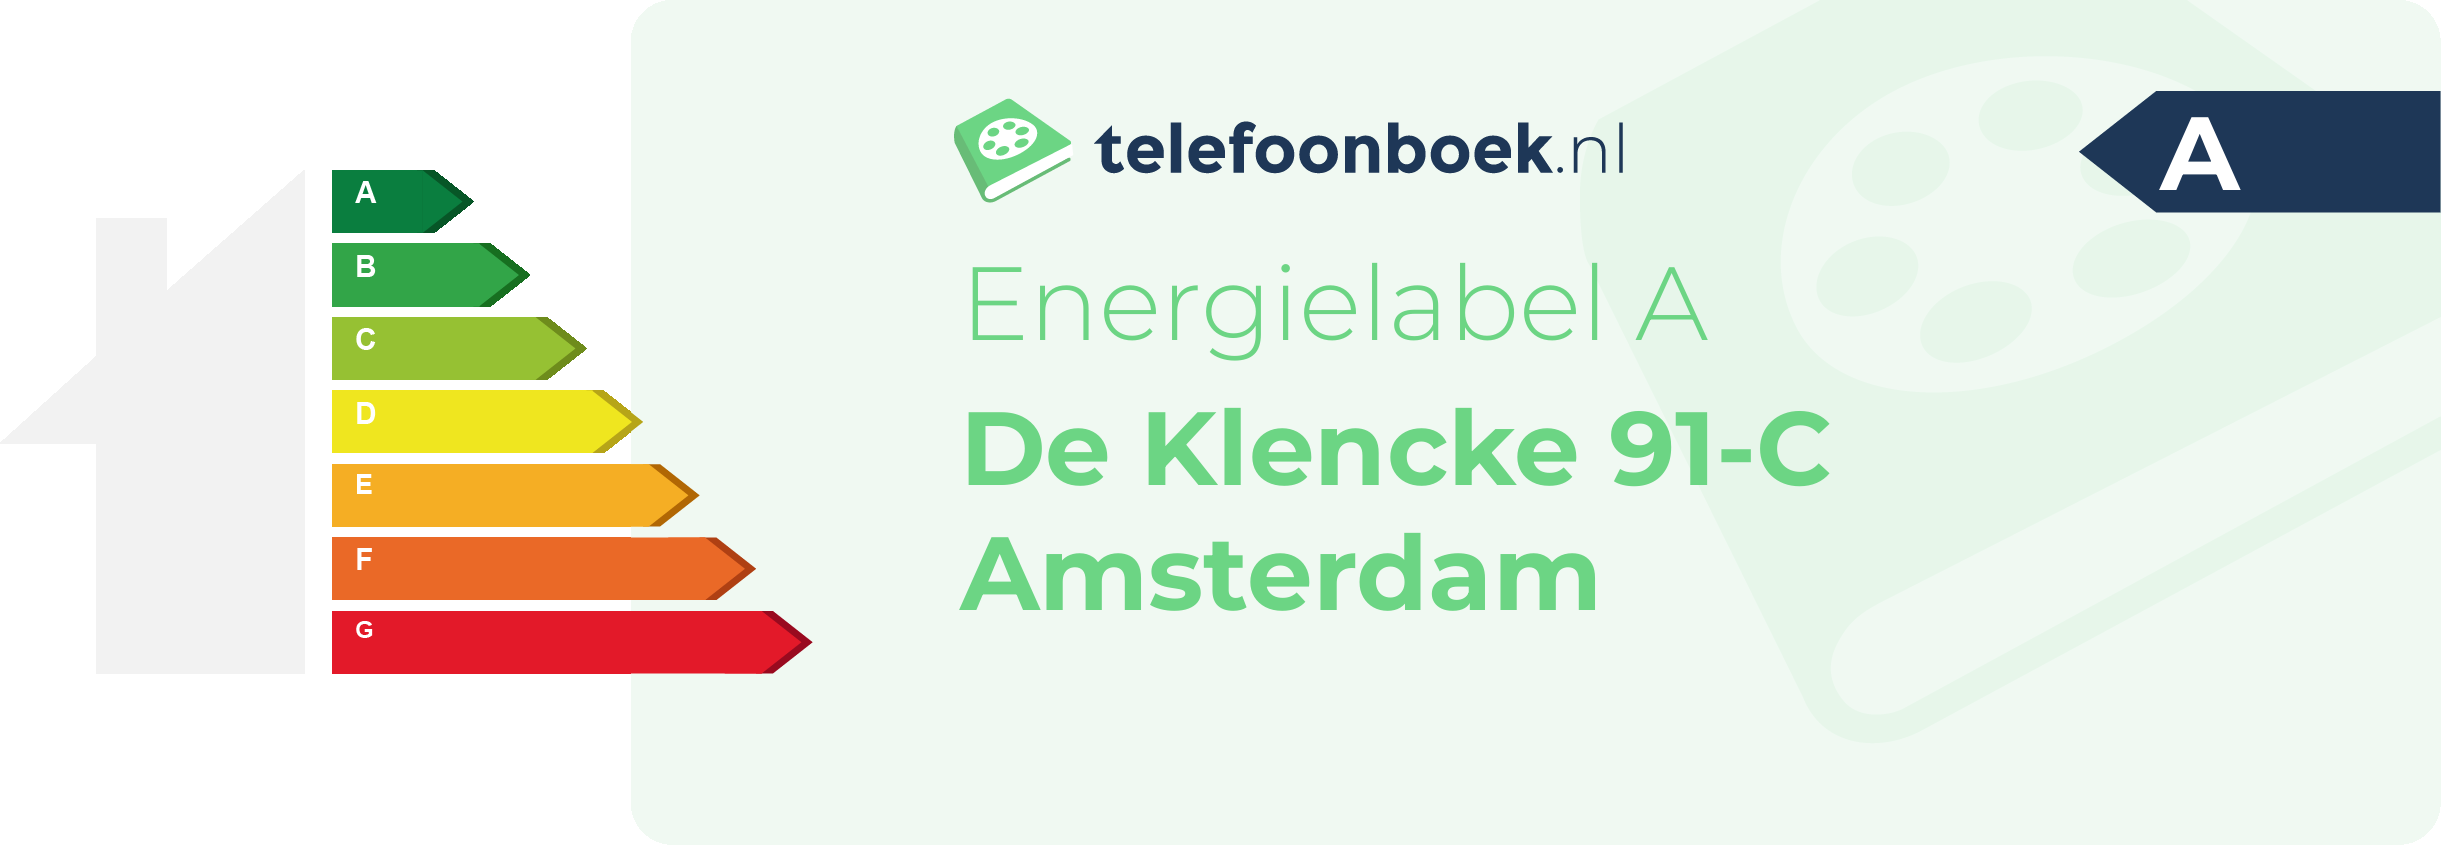 Energielabel De Klencke 91-C Amsterdam